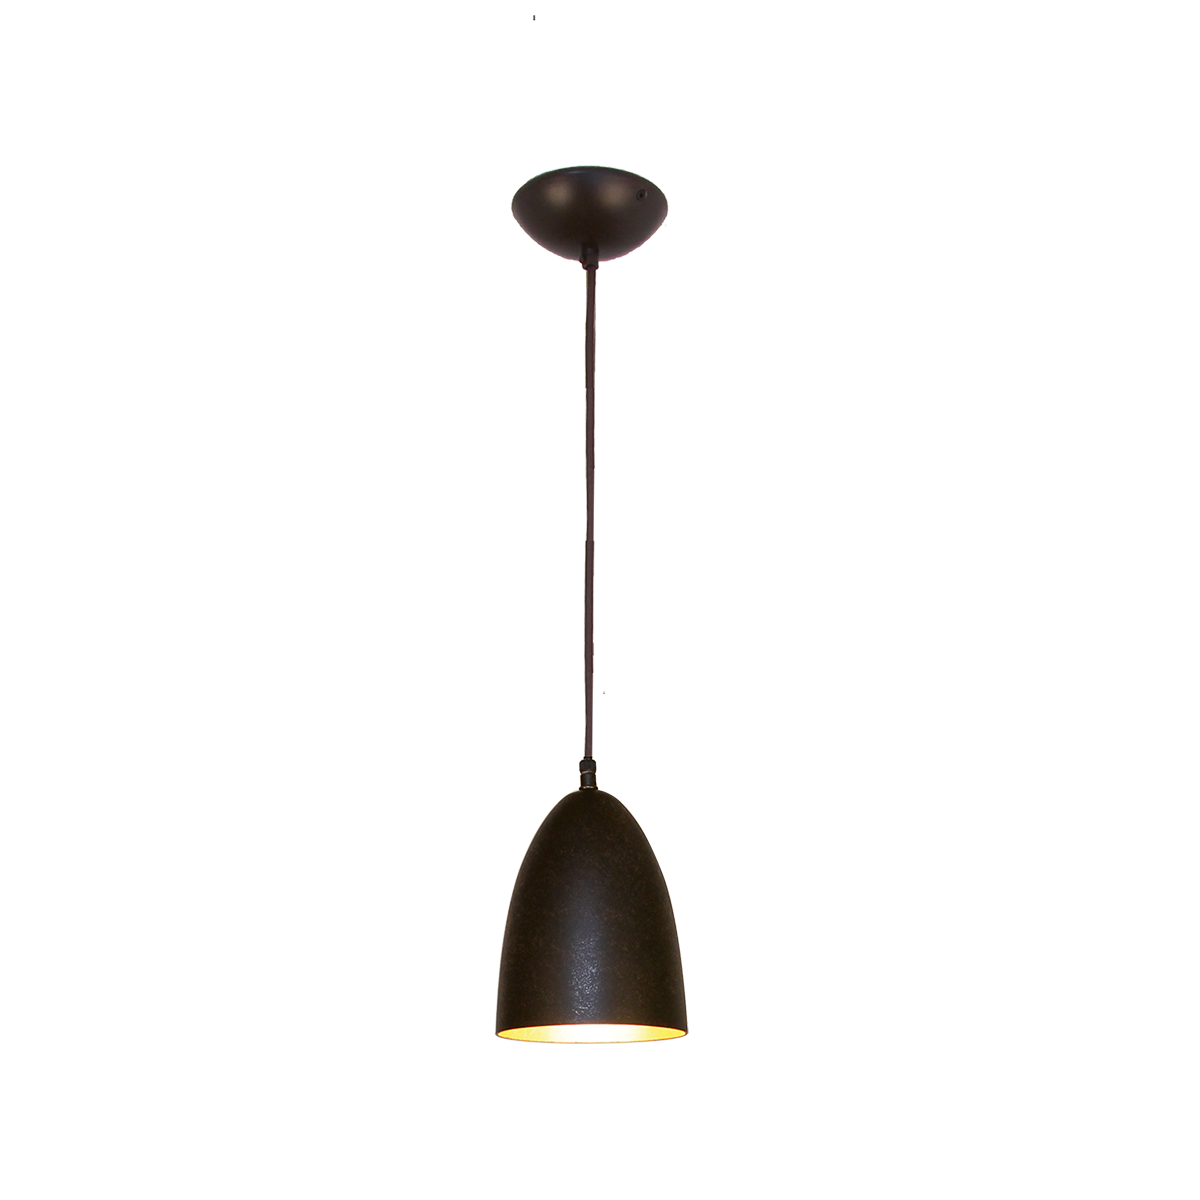 Solo Pendel Hängeleuchte E27 schwarz braun Innen Blattgold Form Tulpe klein Lichtöffnung 14cm mit Textilkabel